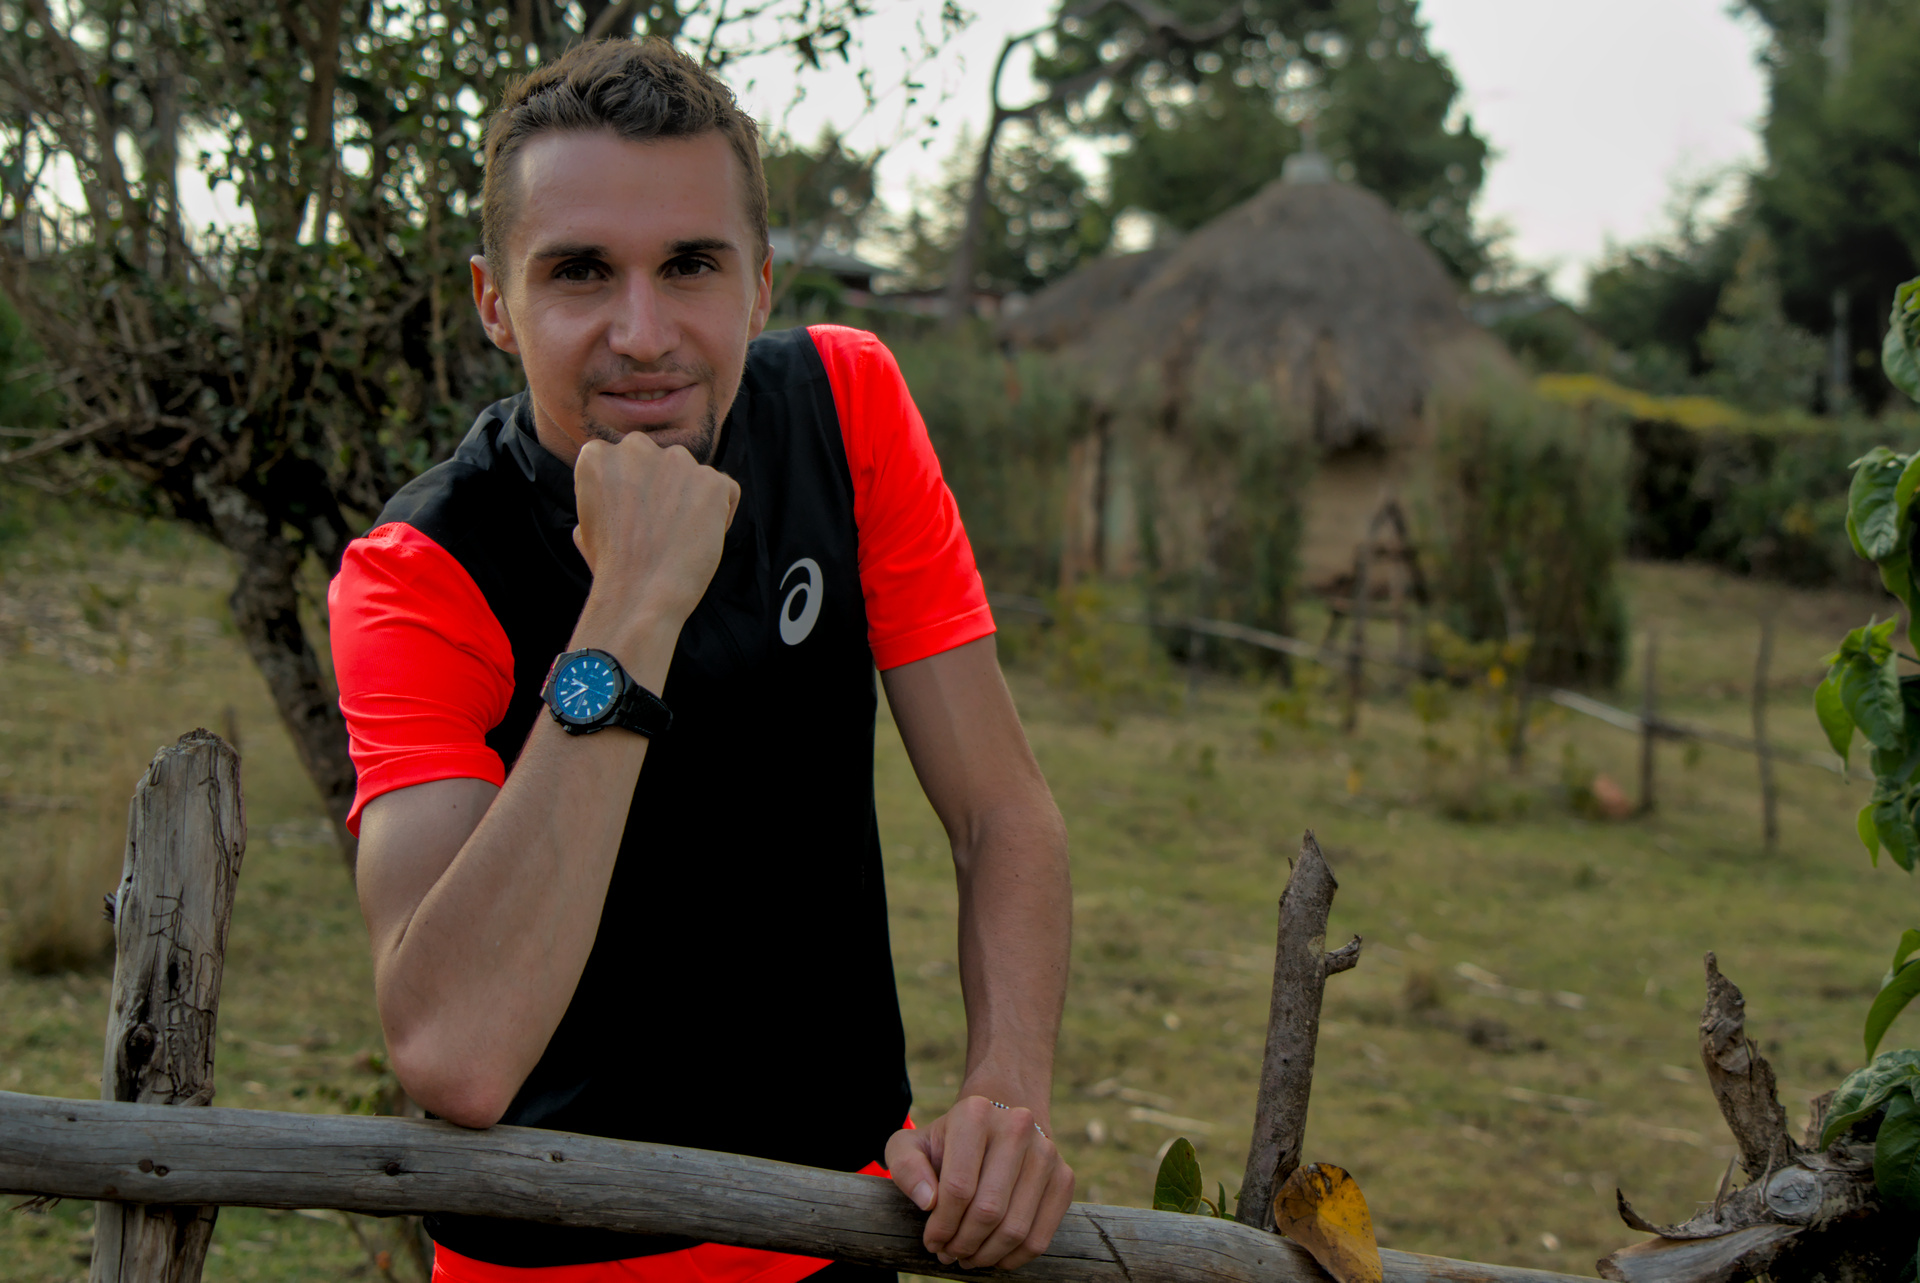 Julien is training in Kenya